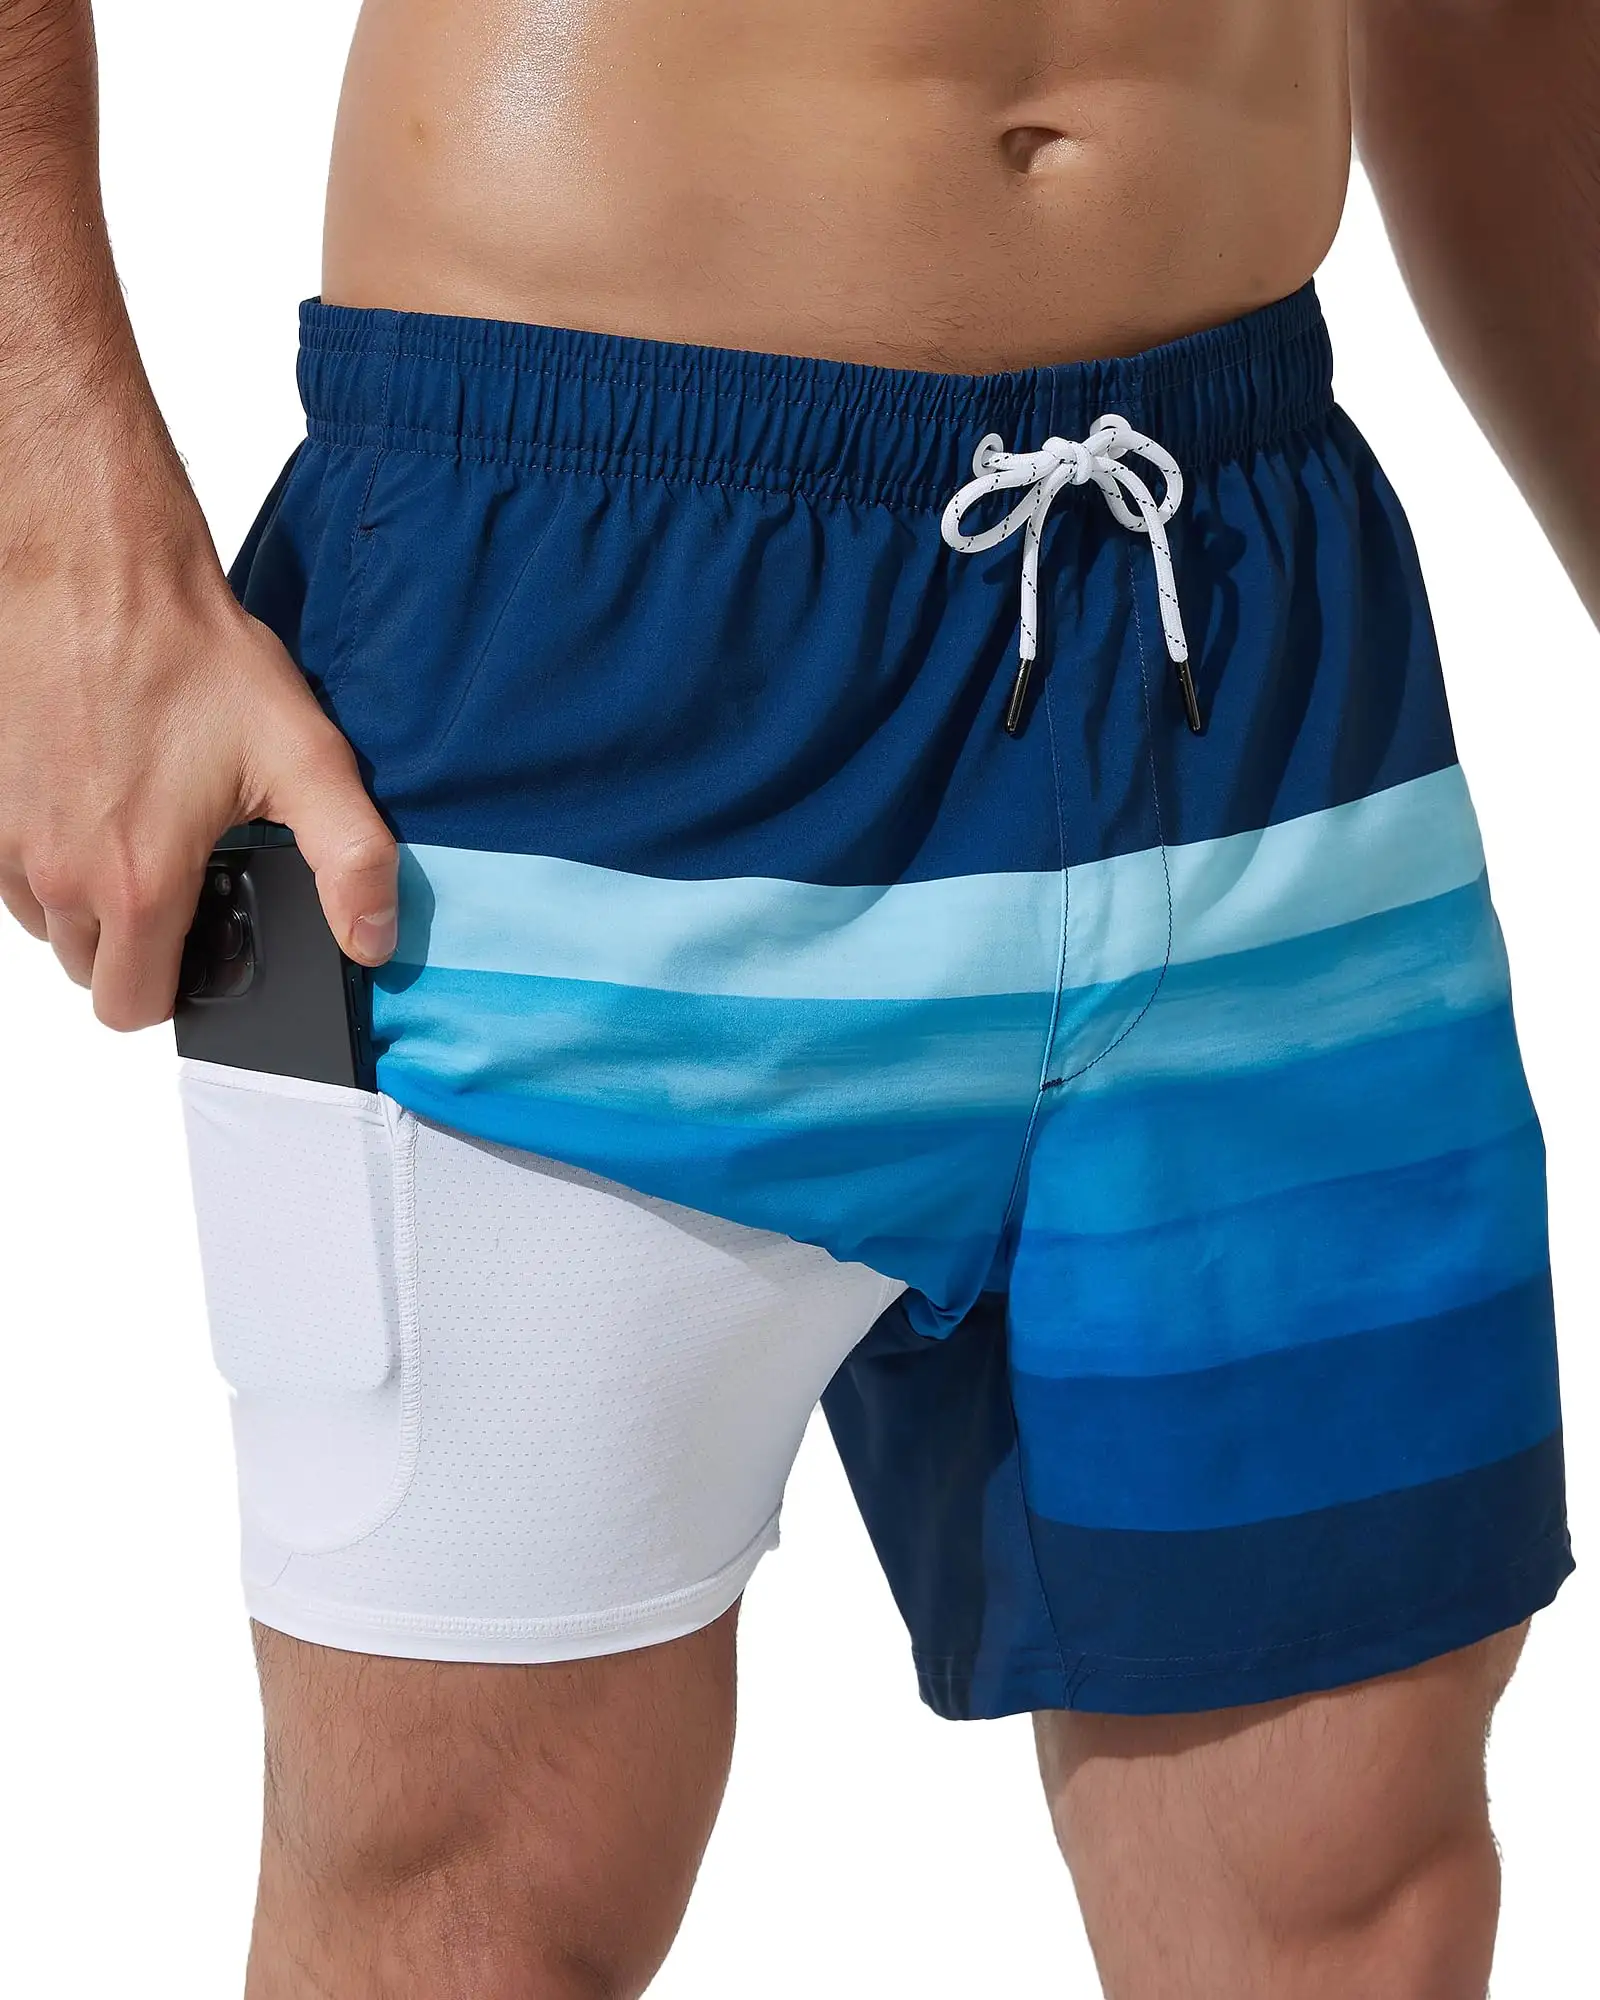 Celana renang pria, celana renang lelaki motif Digital baru modis dapat disesuaikan